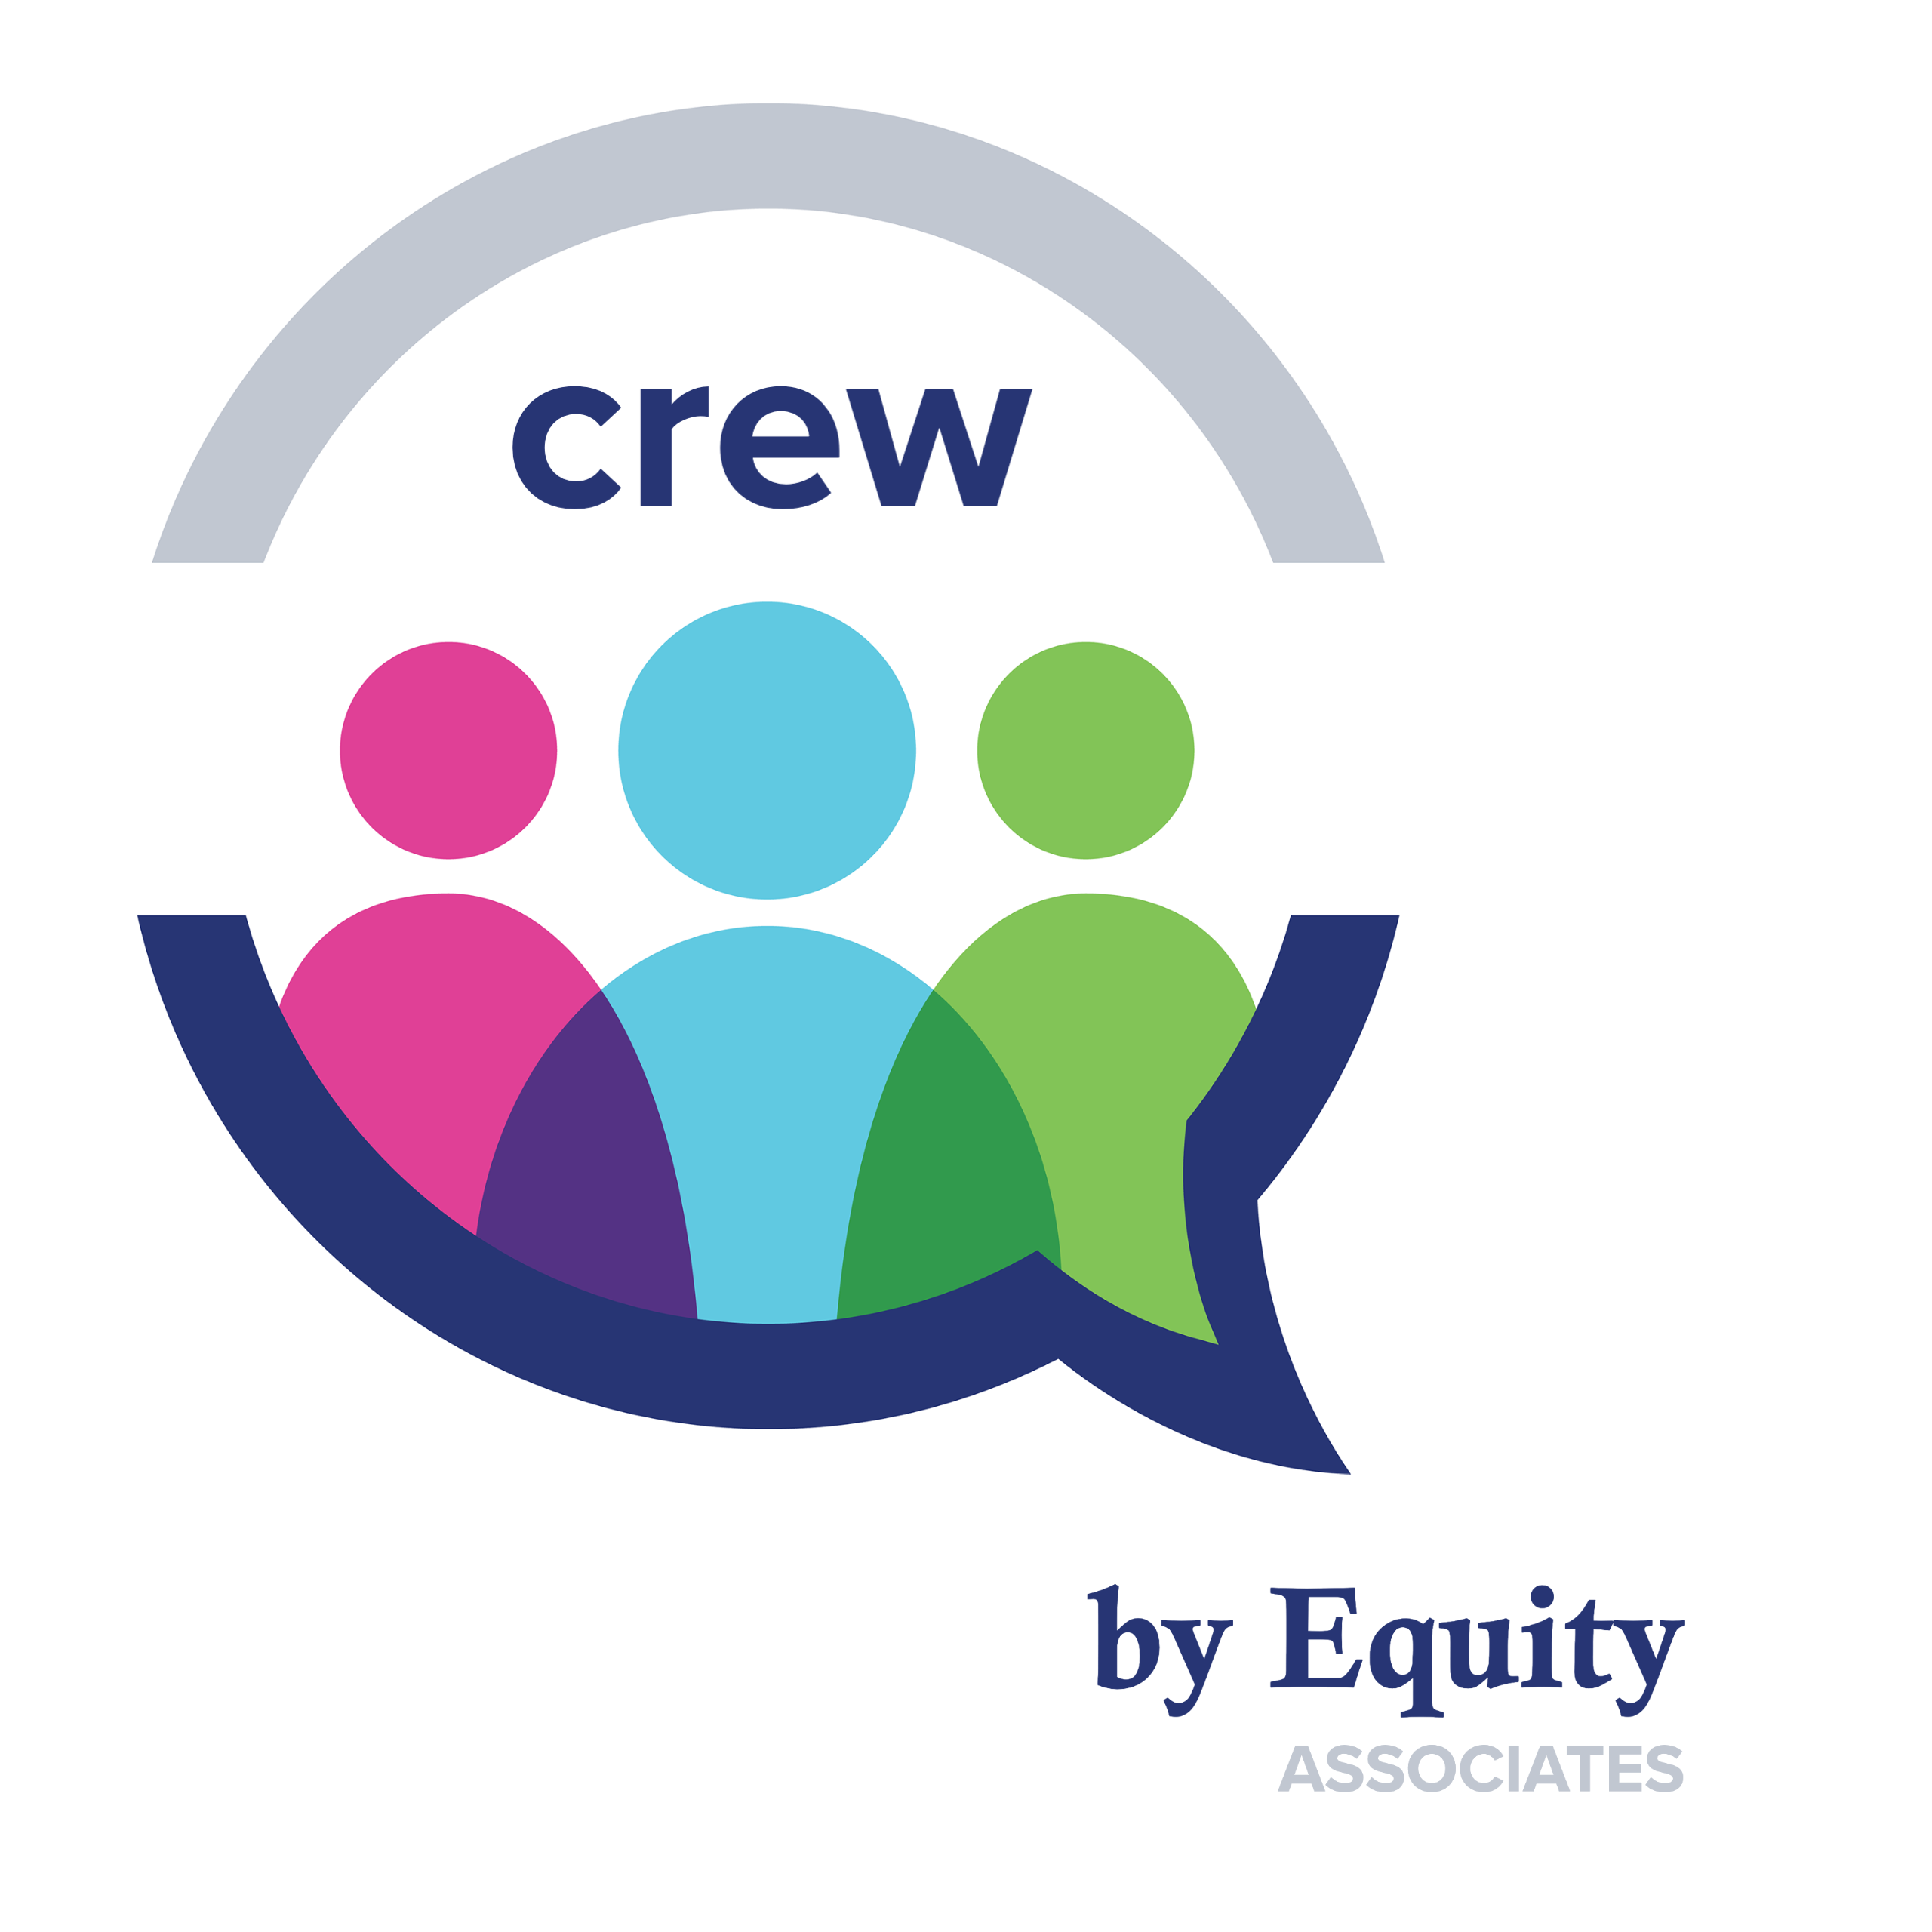 Equity Associates Crew icon